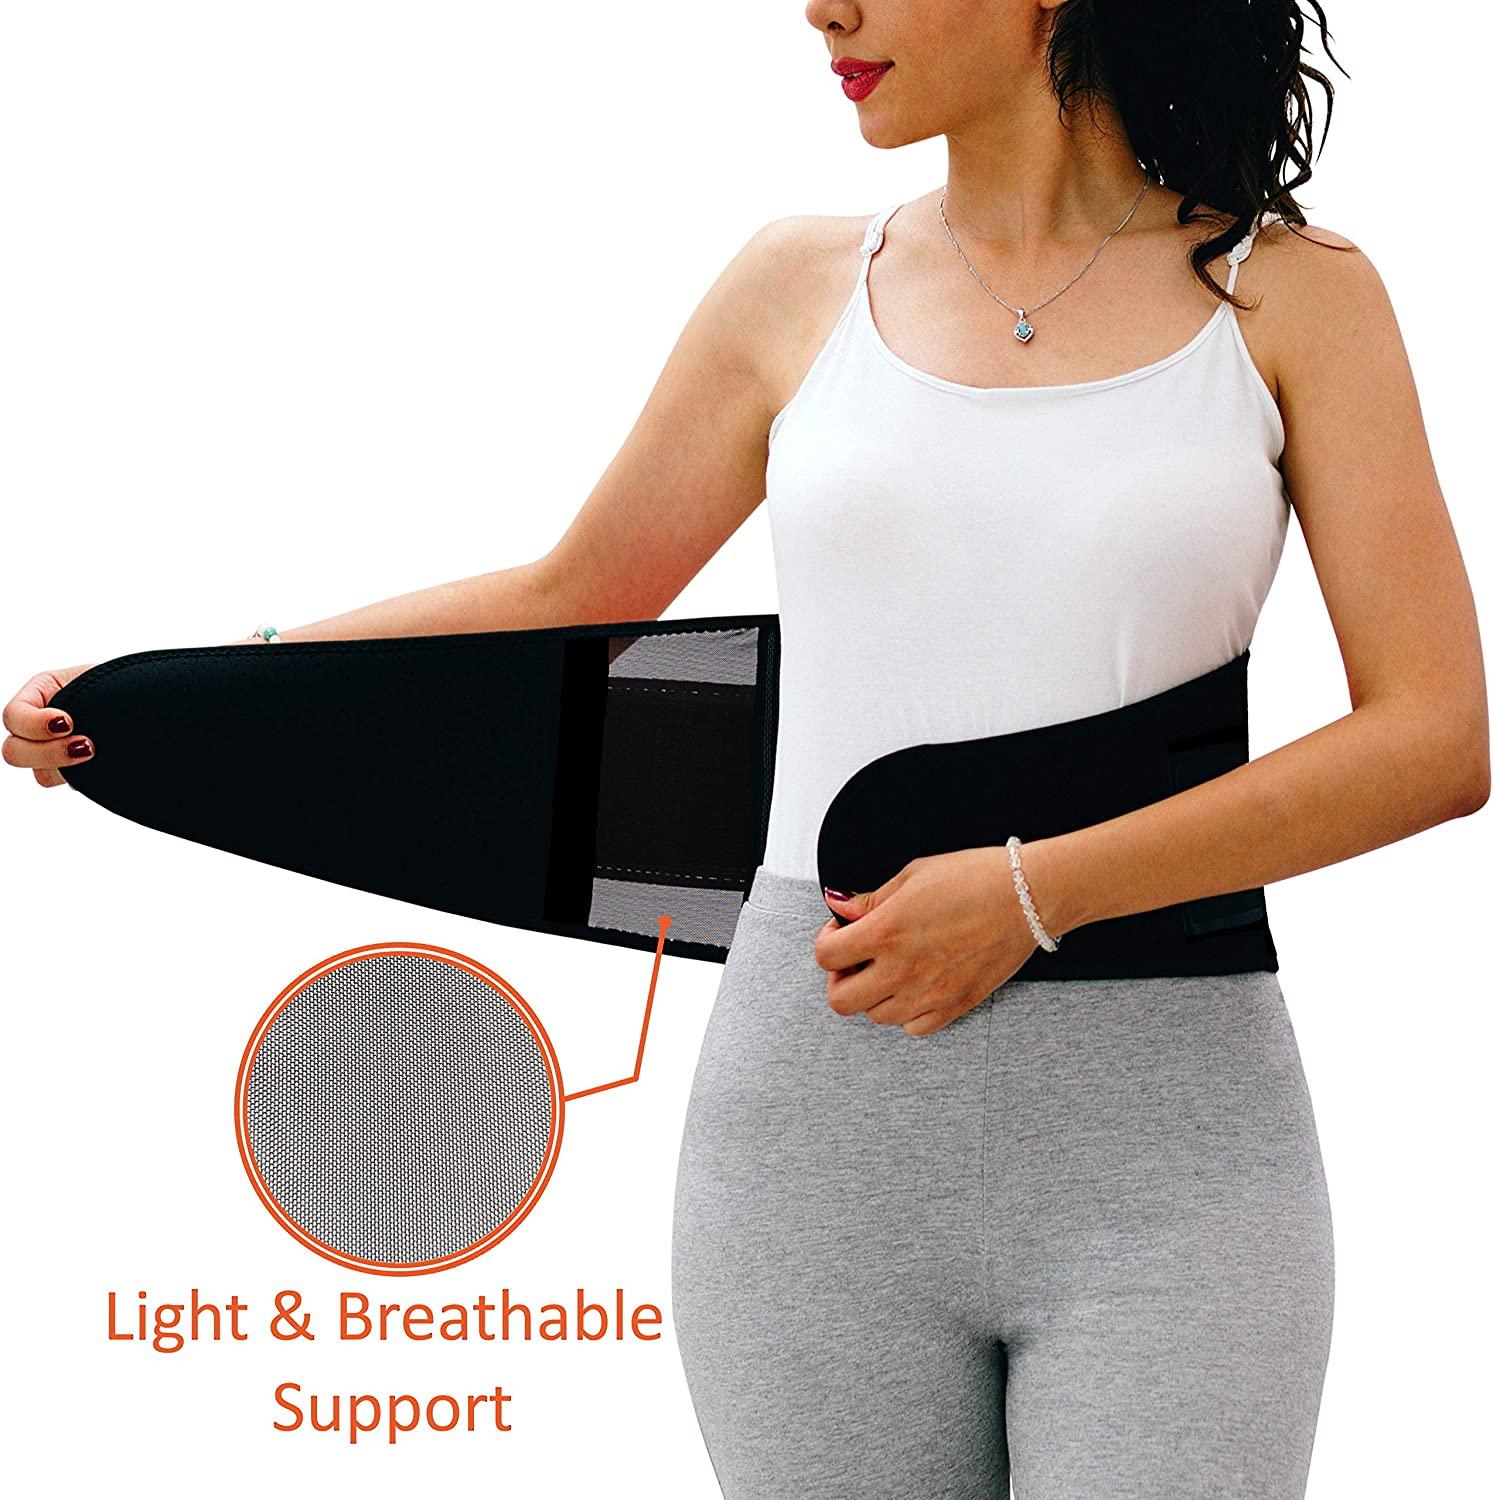 NeoHealth Breathable & Light Lower Back Brace